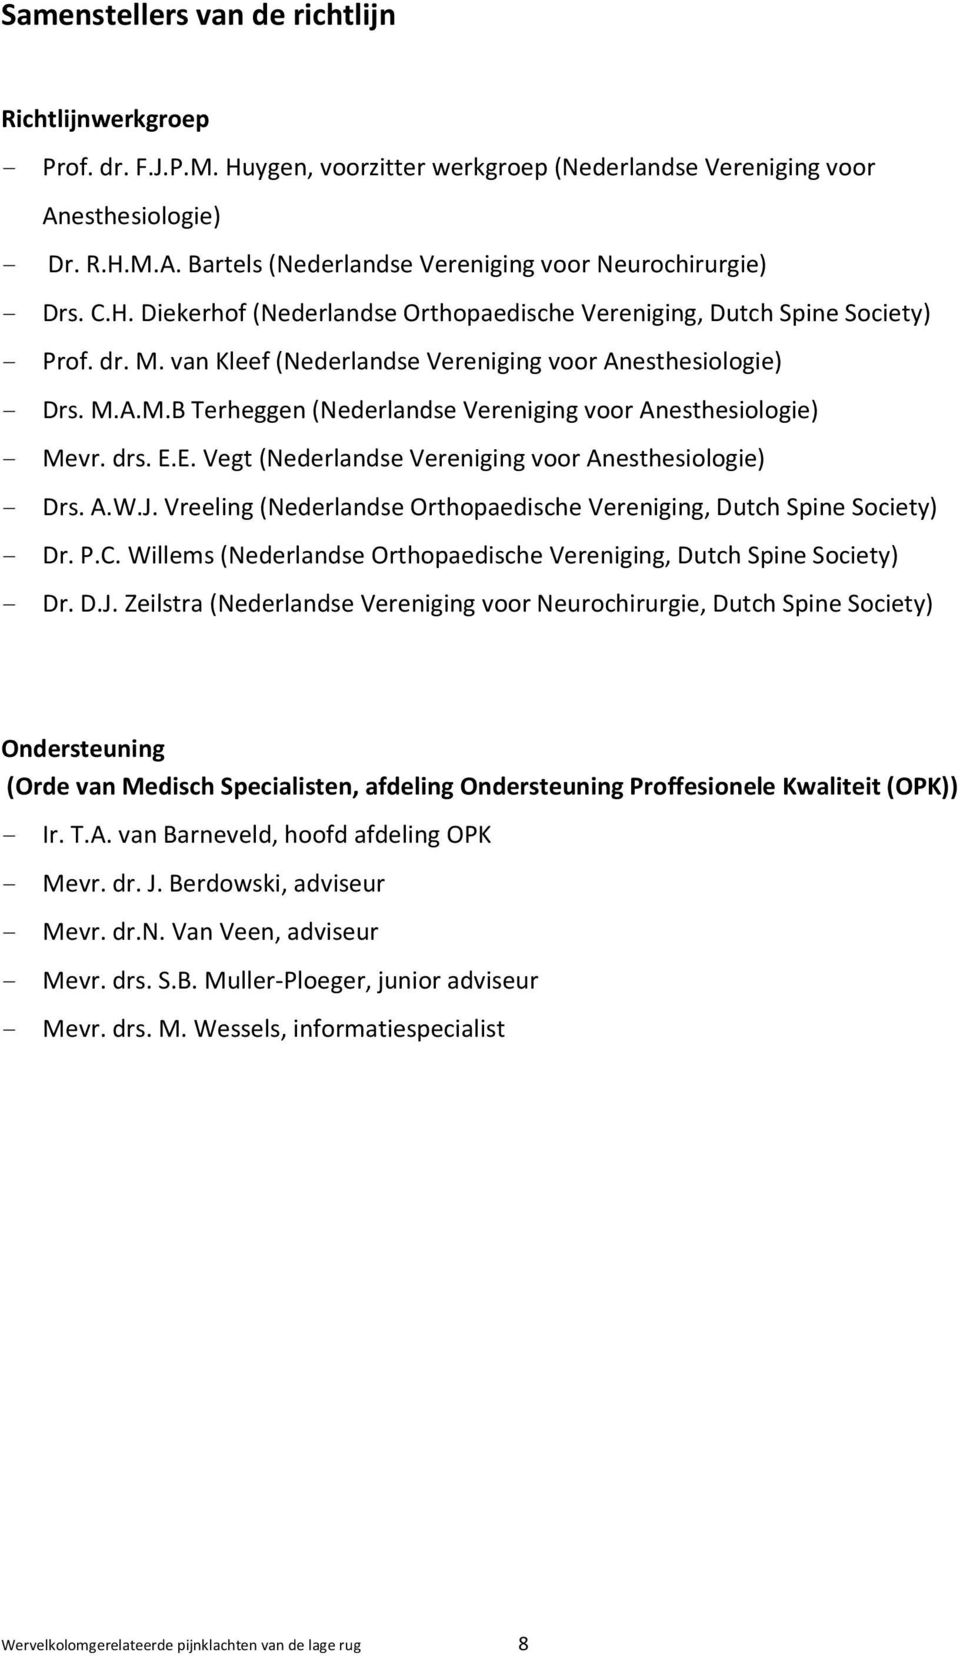 drs. E.E. Vegt (Nederlandse Vereniging voor Anesthesiologie) - Drs. A.W.J. Vreeling (Nederlandse Orthopaedische Vereniging, Dutch Spine Society) - Dr. P.C.